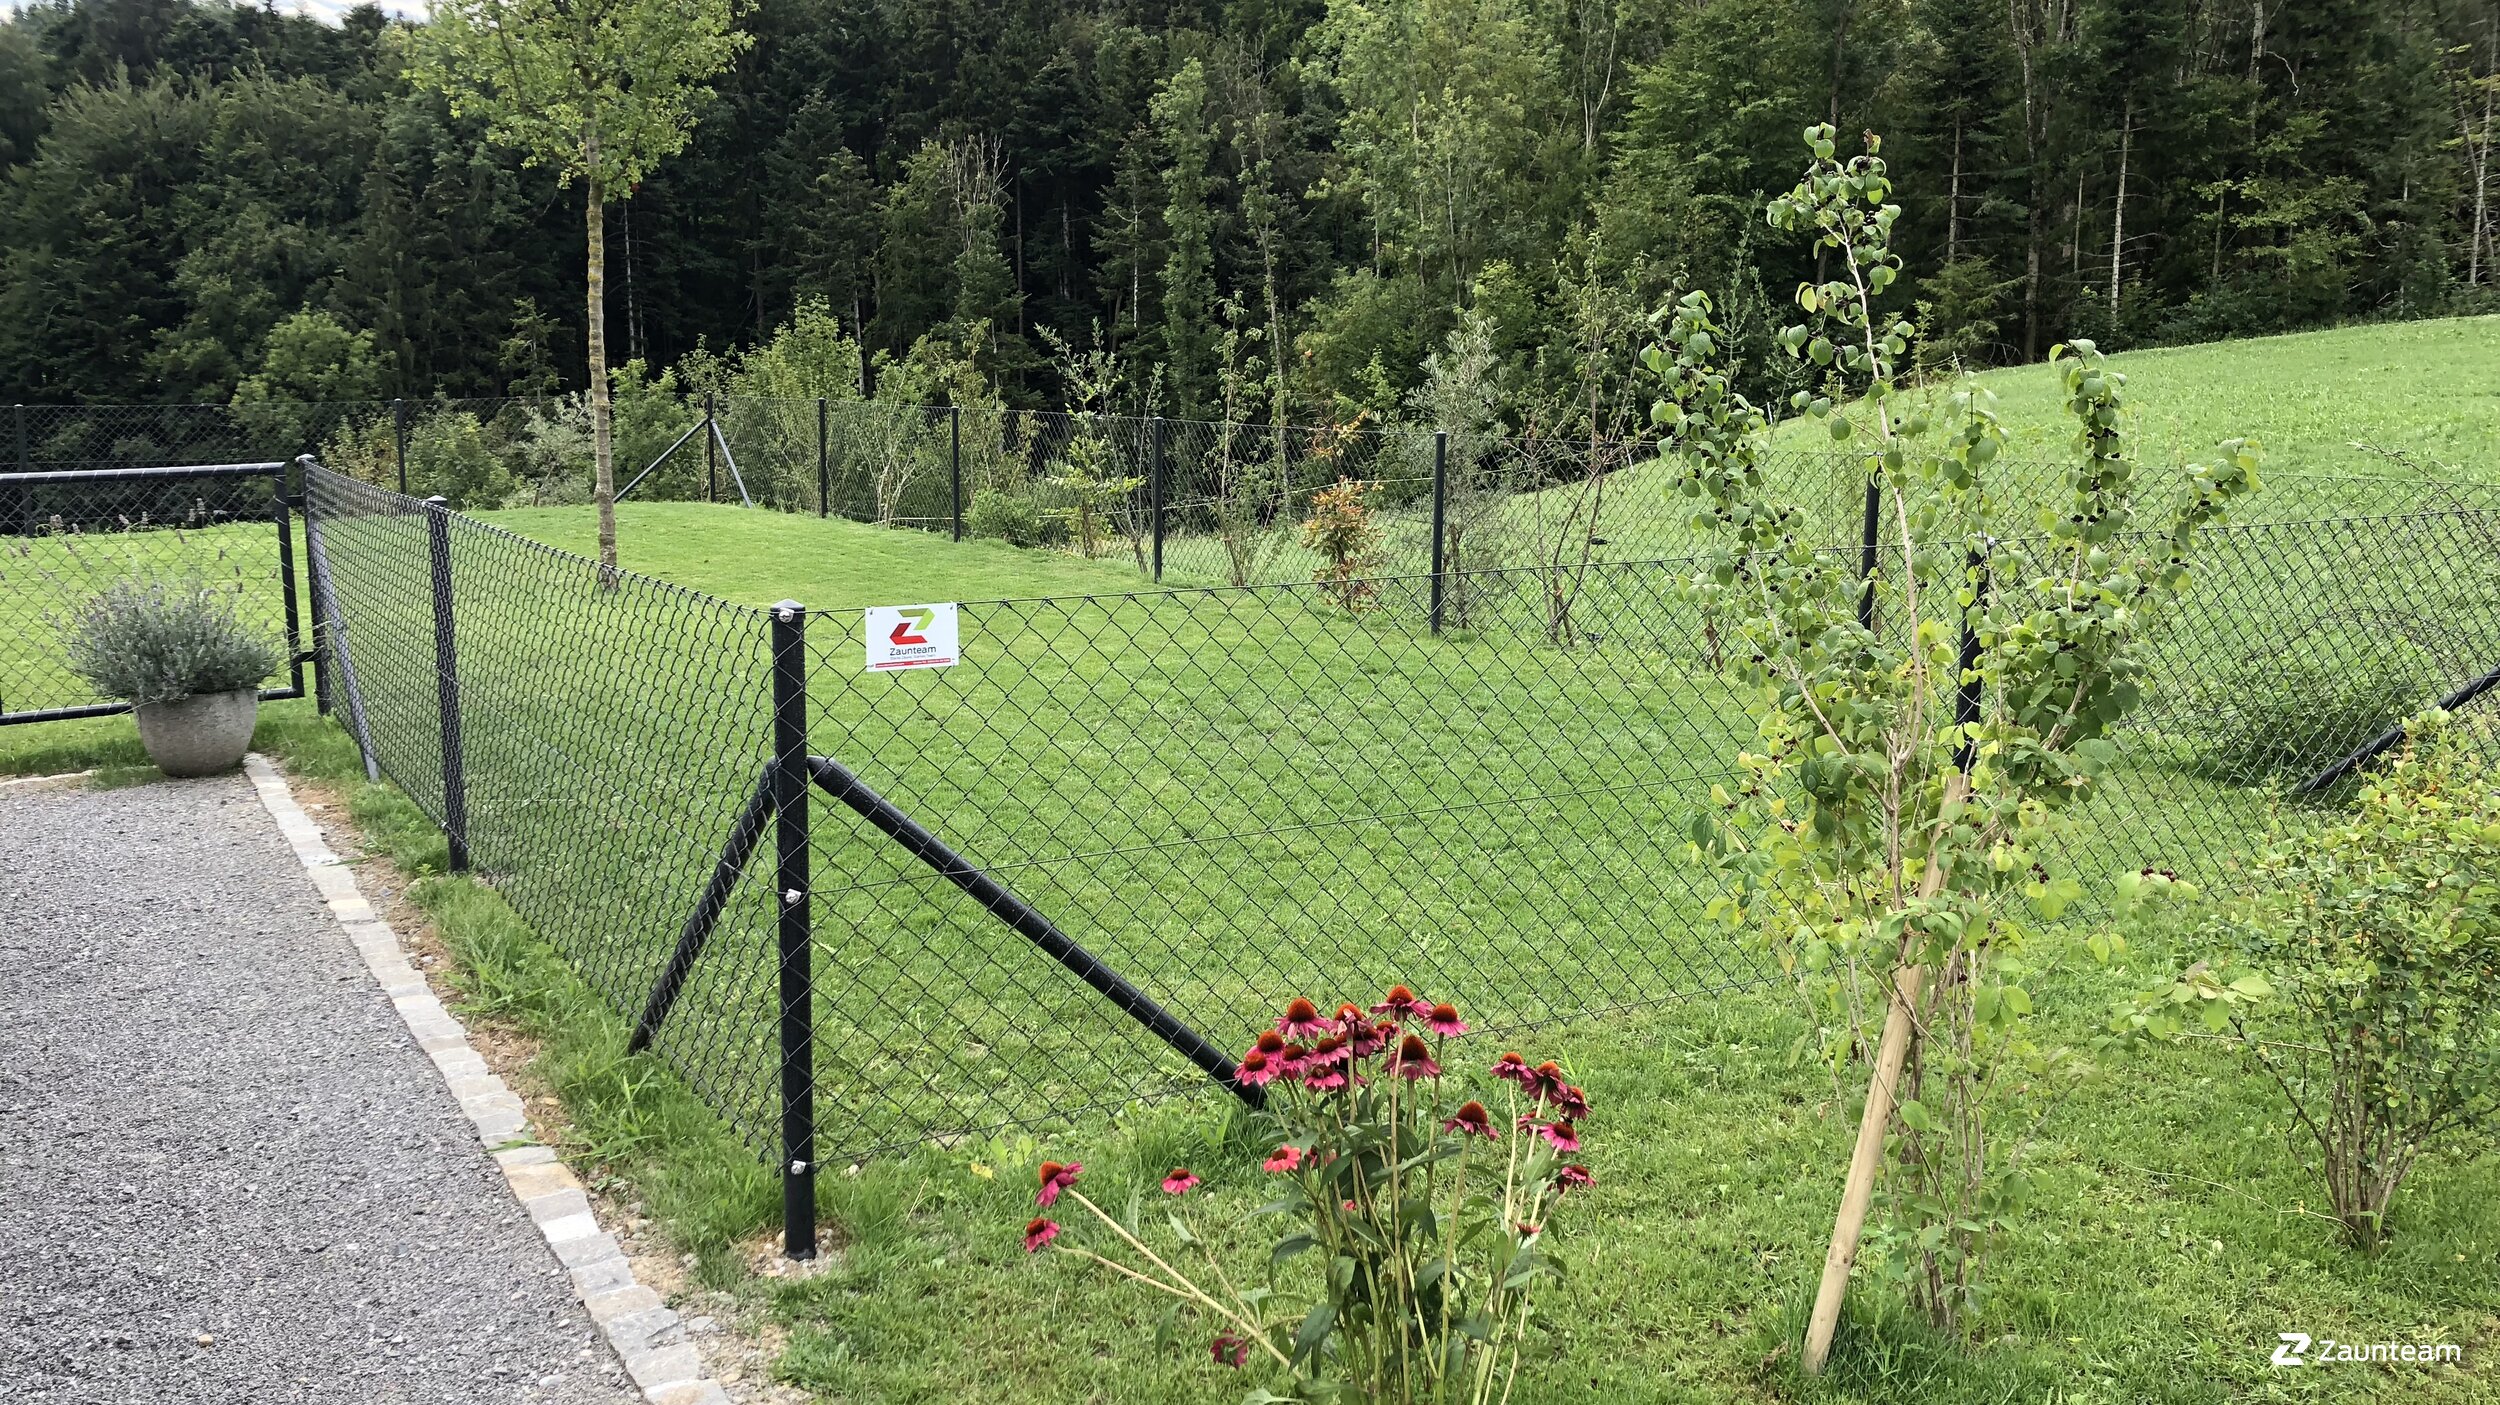 Grillage diagonal de 2018 à 9413 Oberegg Suisse de Zaunteam Appenzellerland.